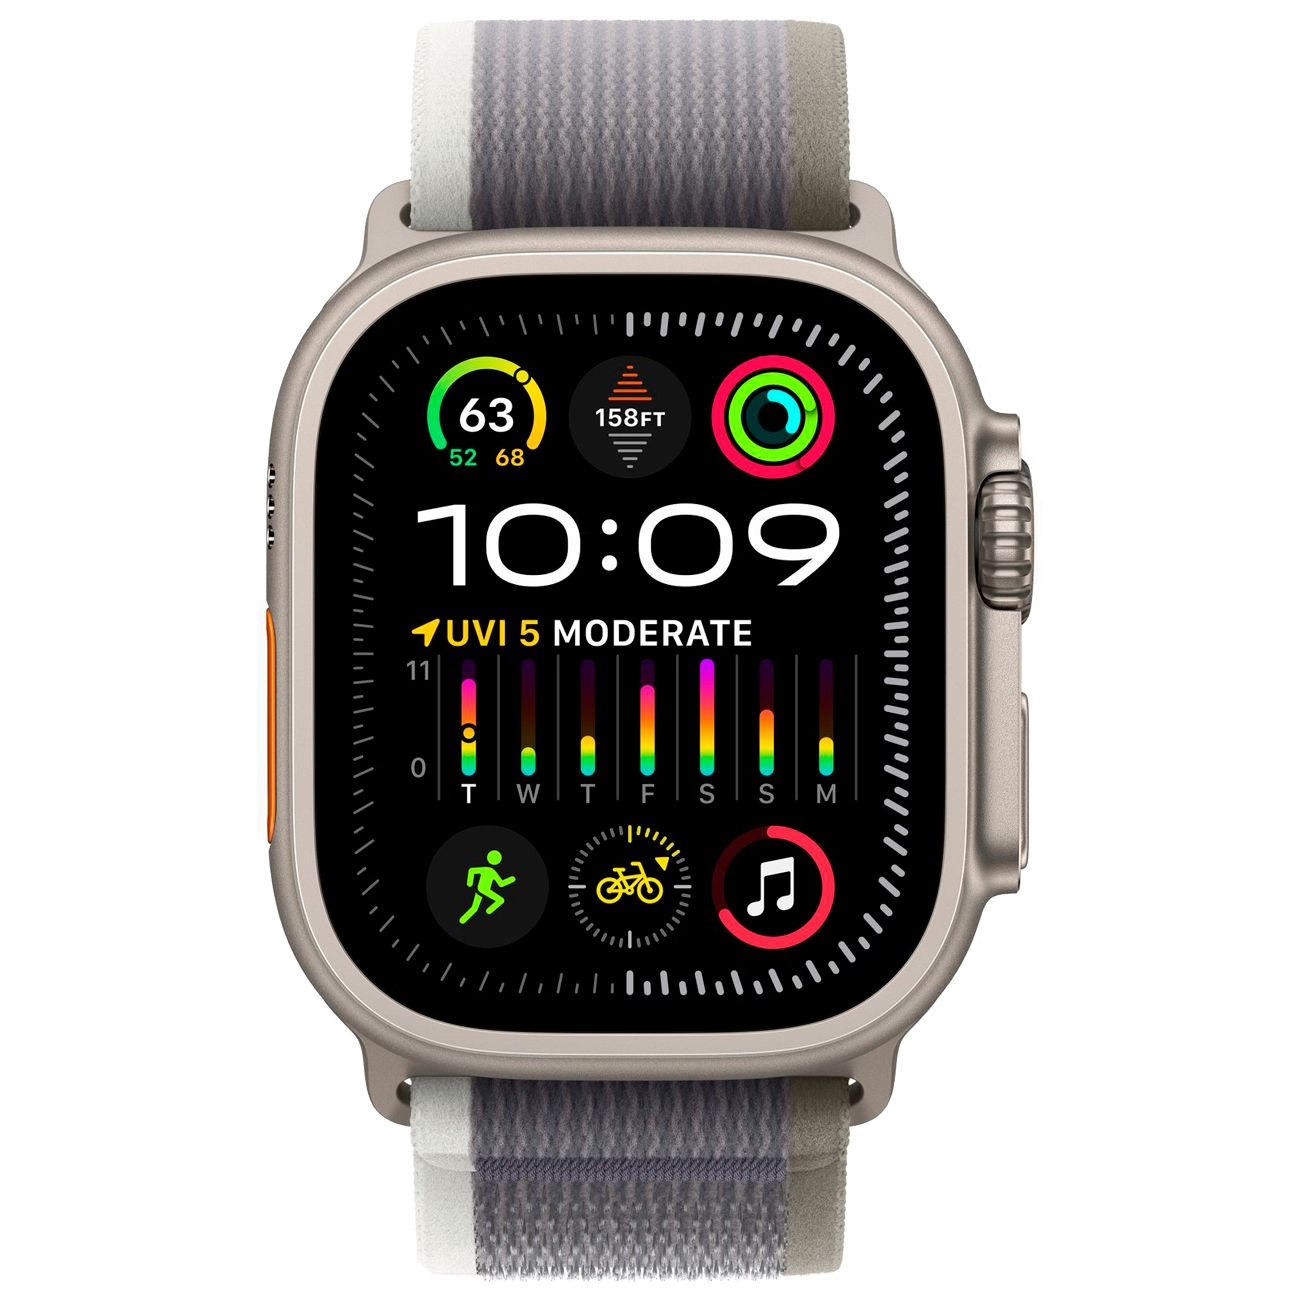 Купить смарт-часы apple watch ultra 2 trail loop green/gray Apple Watch Ultra 2 в официальном магазине Apple, Samsung, Xiaomi. iPixel.ru Купить, заказ, кредит, рассрочка, отзывы,  характеристики, цена,  фотографии, в подарок.